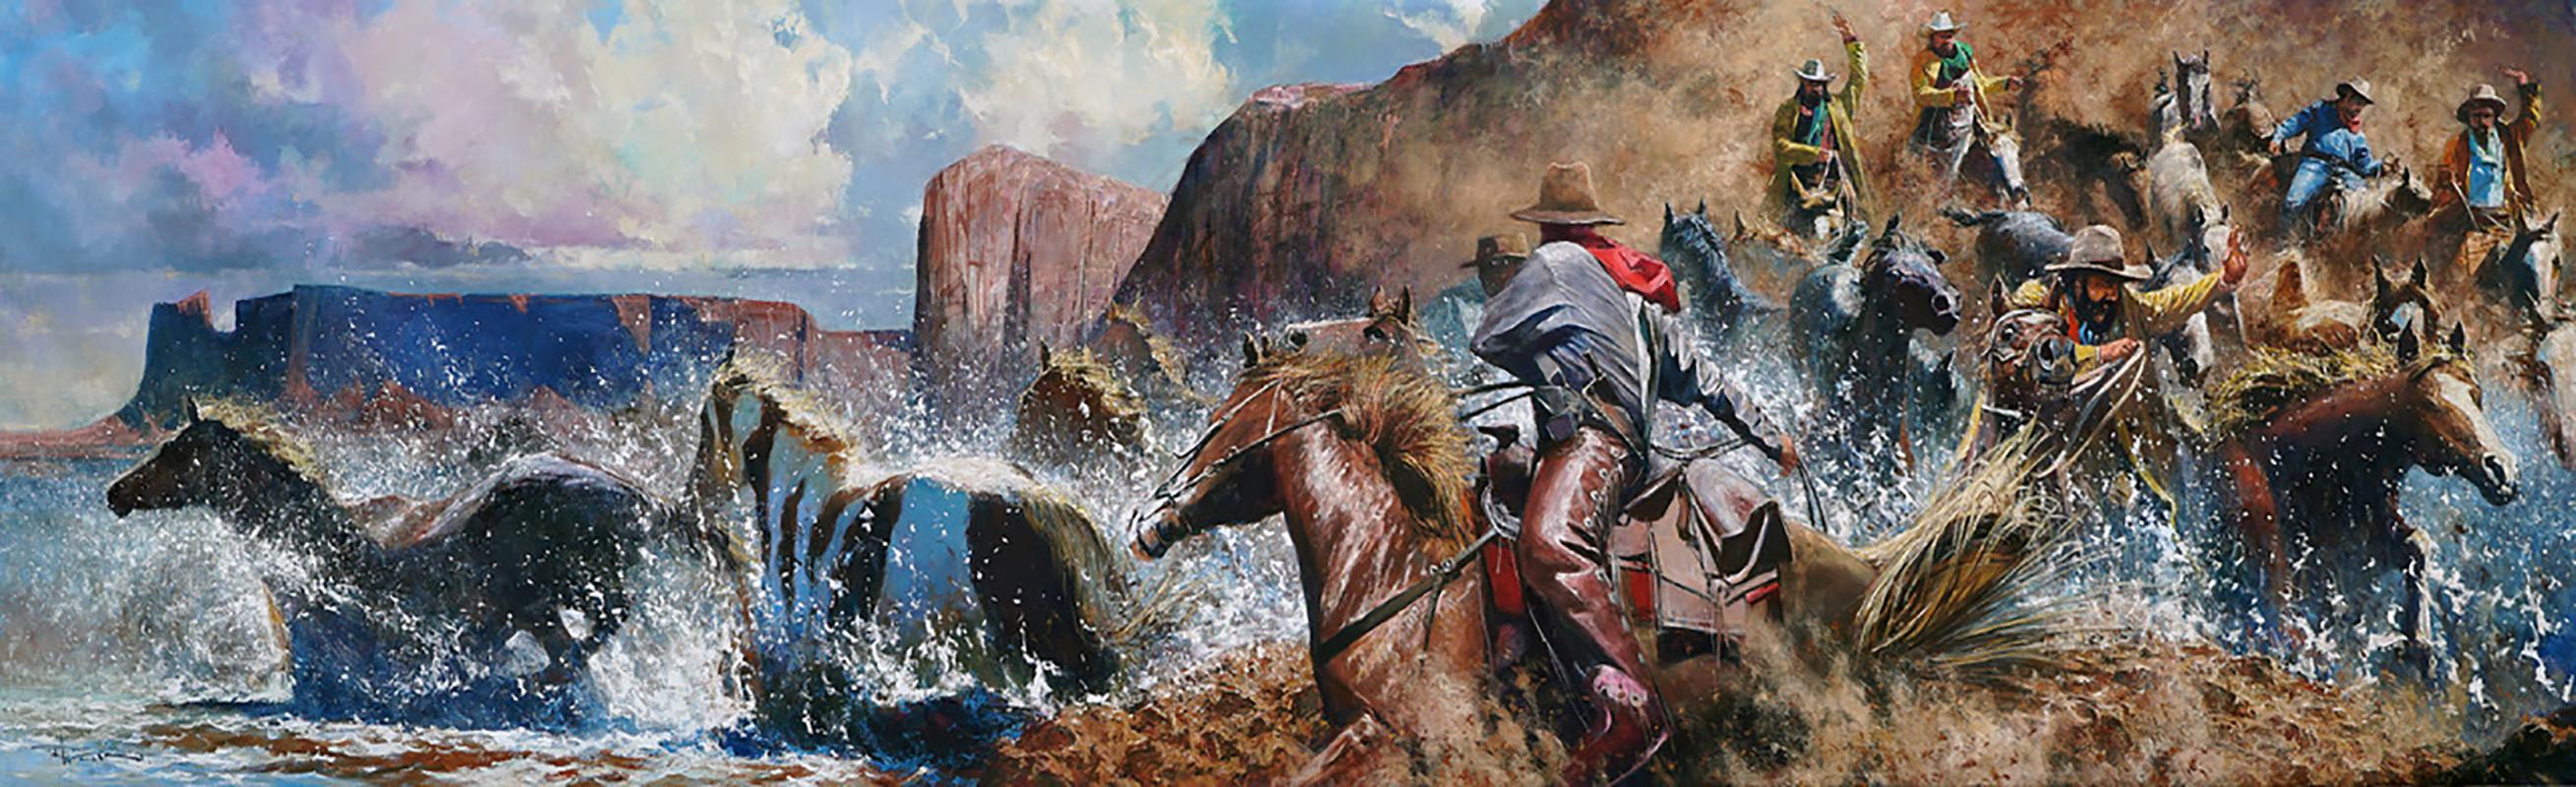 "Moving the Wild Ones" de Robert Hagan est une huile originale sur toile et mesure 60x216.  
Dans cette grande peinture originale de Robert Hagan, des cow-boys à cheval courent à travers les montagnes des canyons en soulevant de la poussière et en